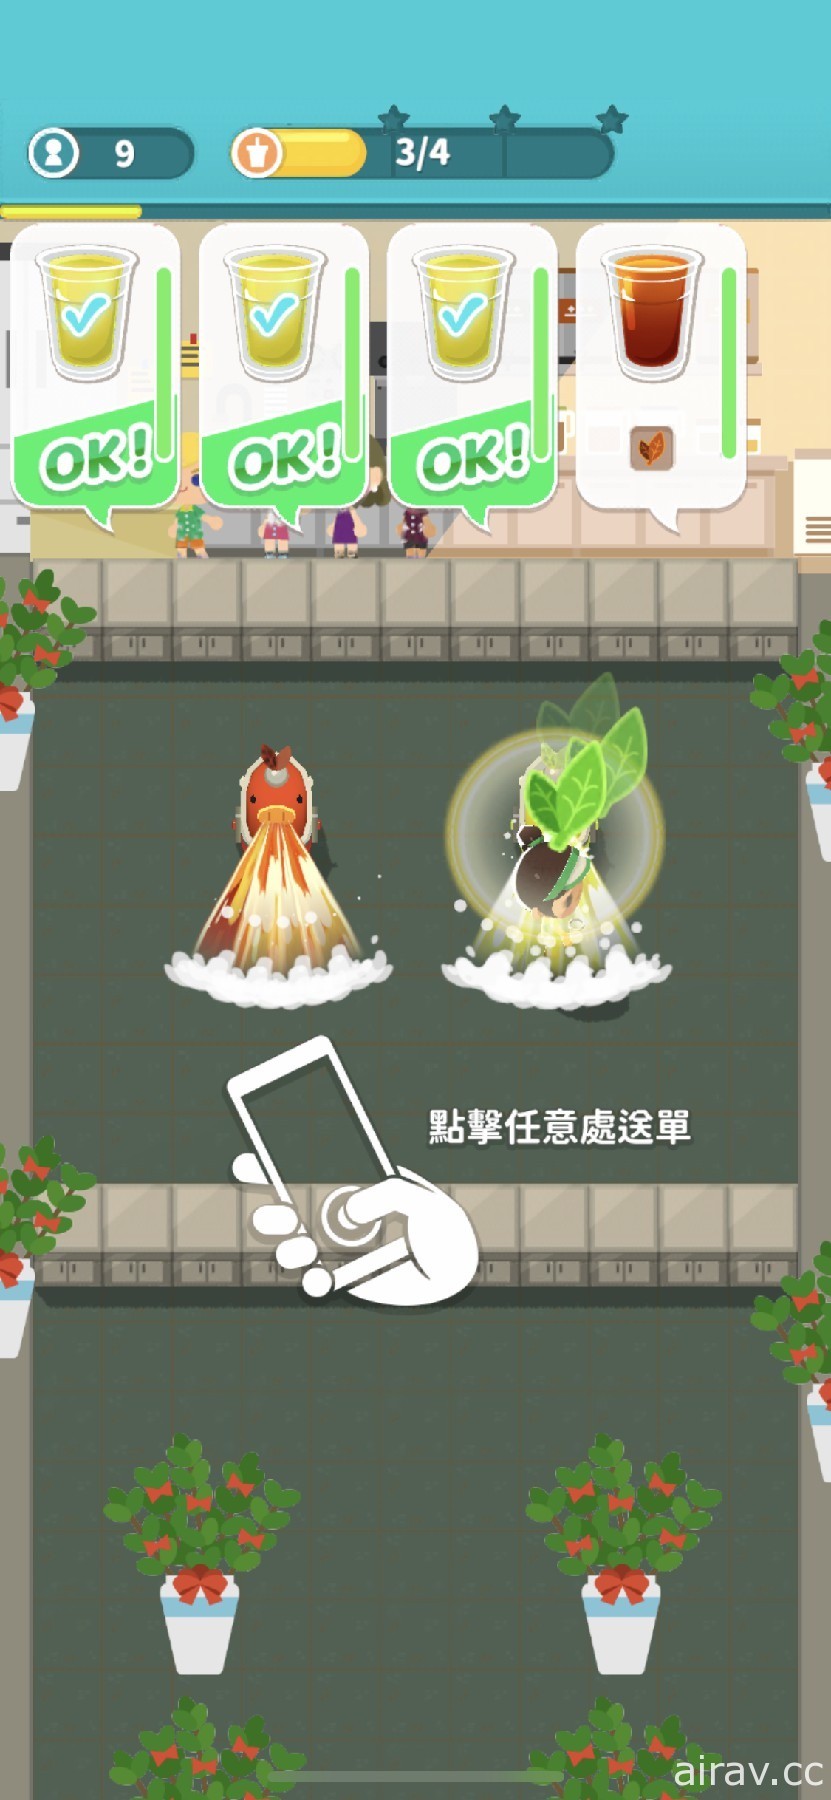 台灣獨立遊戲新作《搖搖星球》今秋上市 扮演外星人用手搖茶征服地球